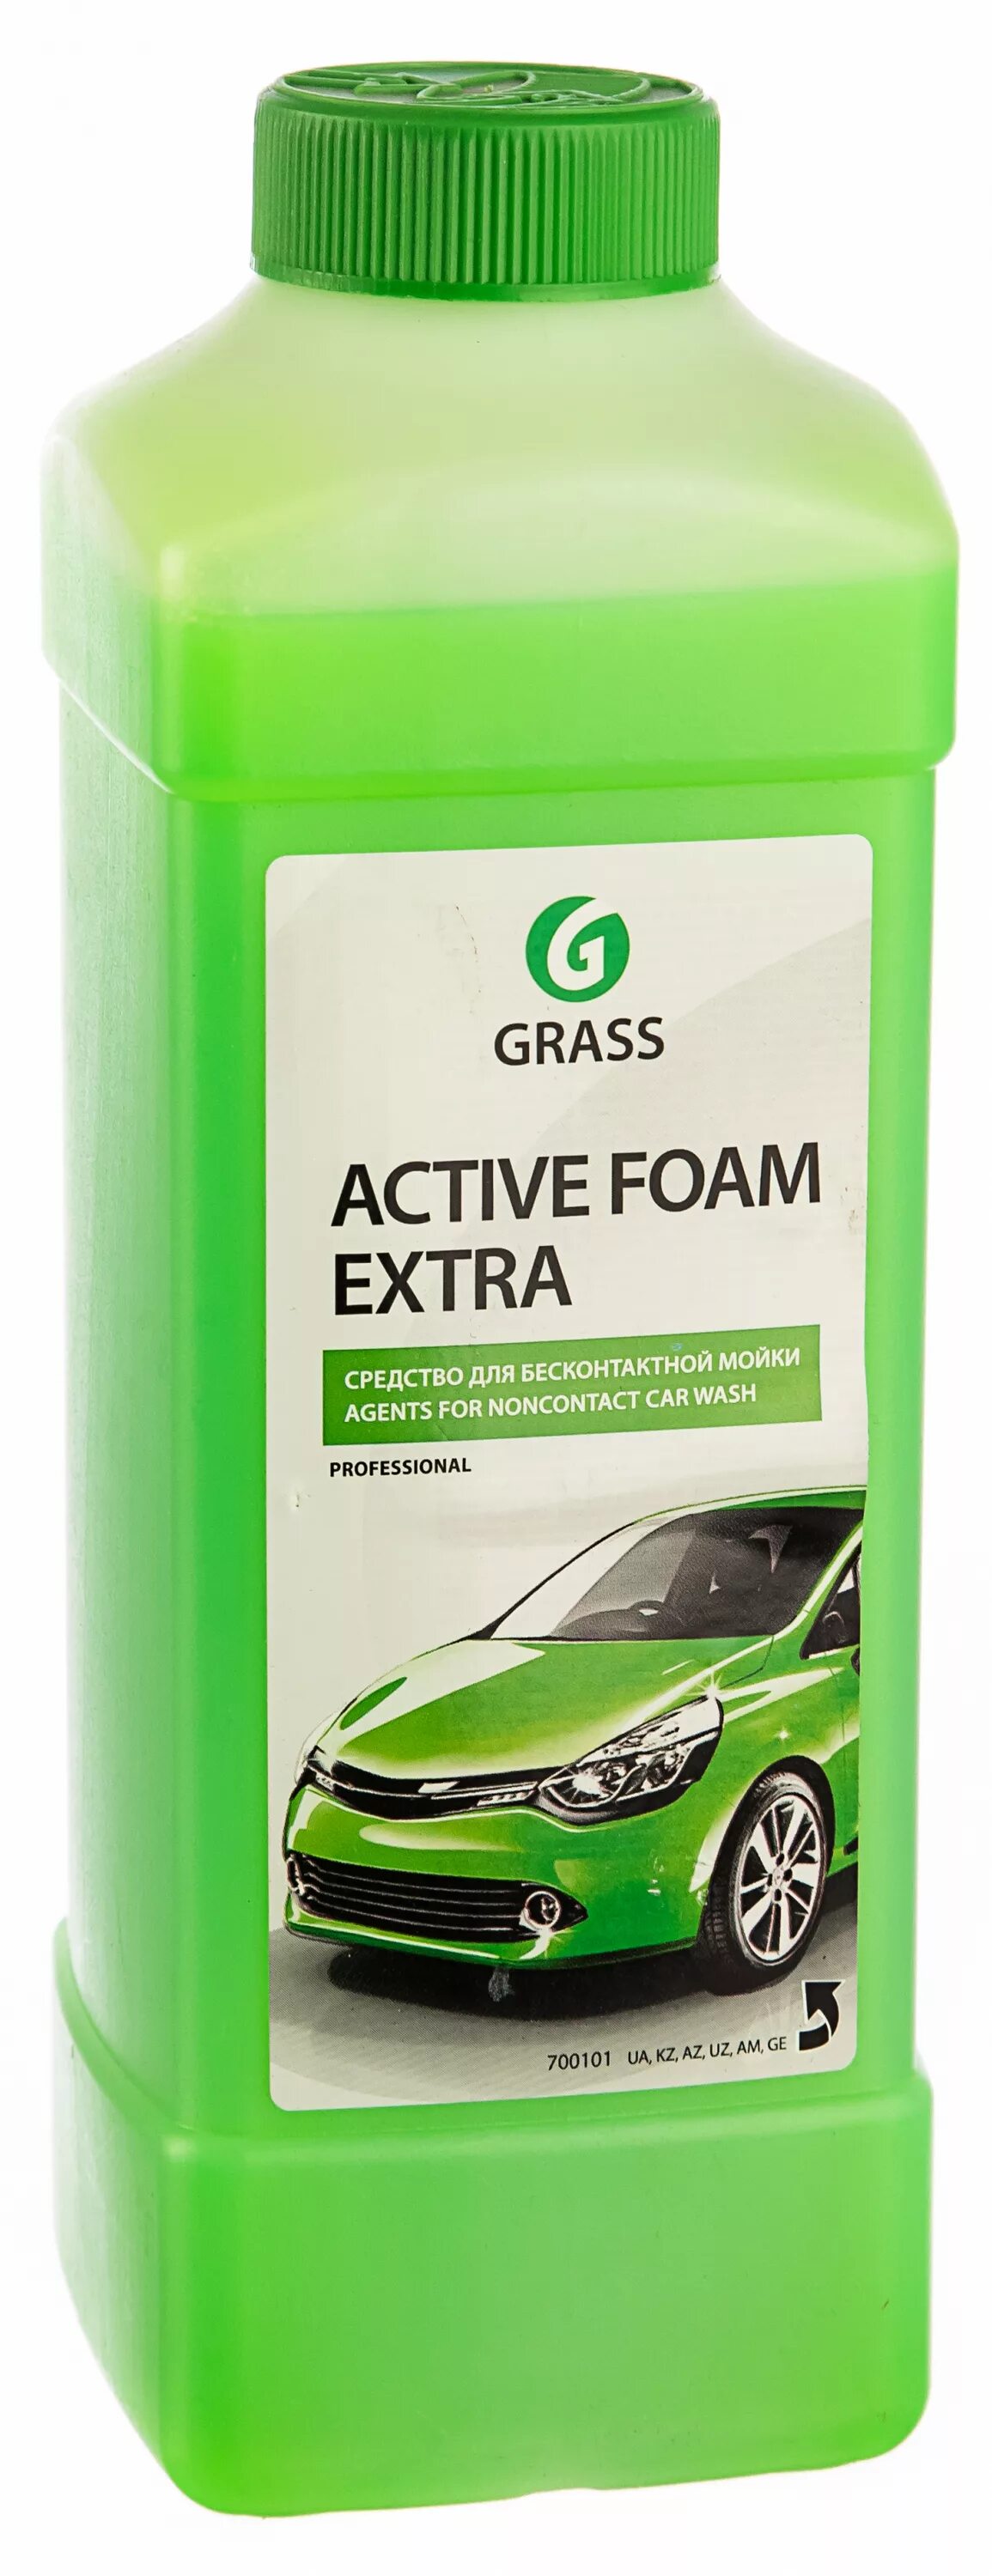 Пена grass active foam. 700101 Активная пена «Active Foam Extra» ( grass) 1 л. Химия для бесконтактной мойки Грасс. Grass Active Foam Extra 1 л. Шампунь Грасс для бесконтактной.